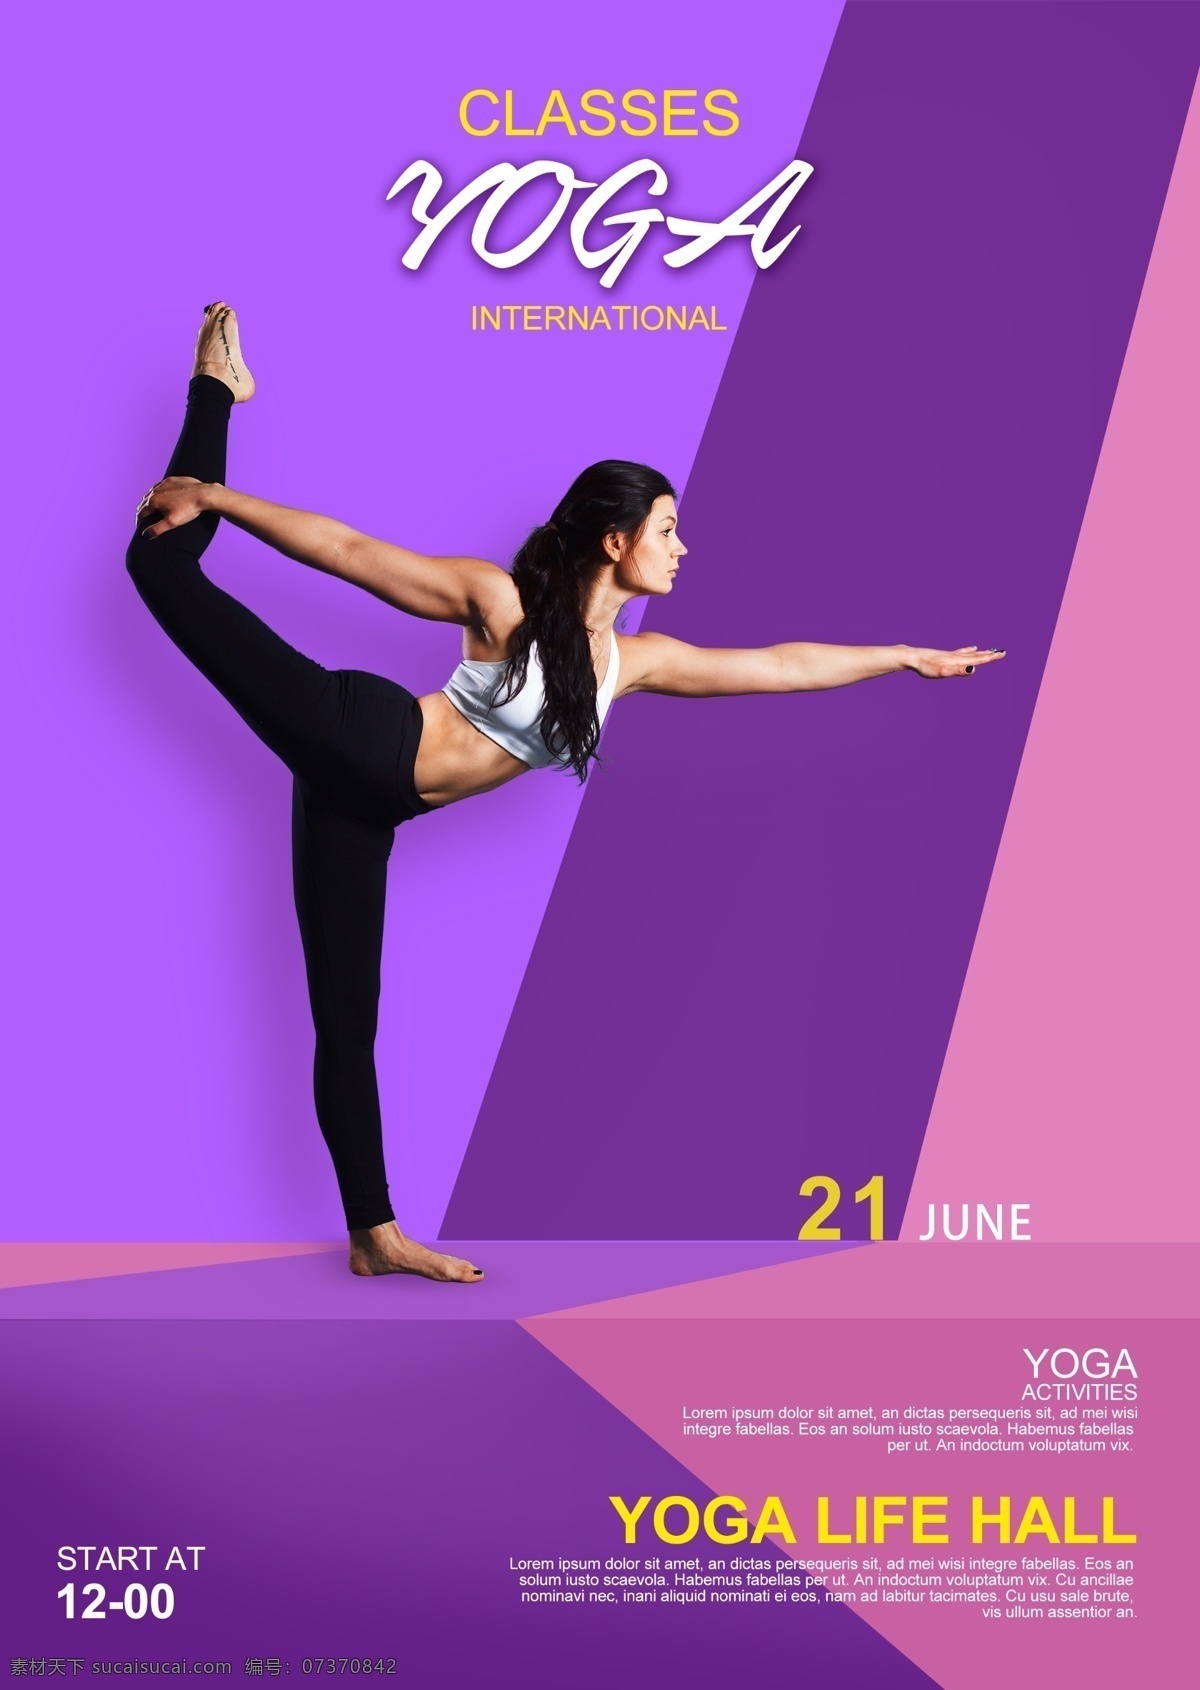 瑜伽 传单 desiger 海报 行使 瑜伽海报设计 瑜伽传单 传单设计 矢量设计 健身 健身传单 紫色传单